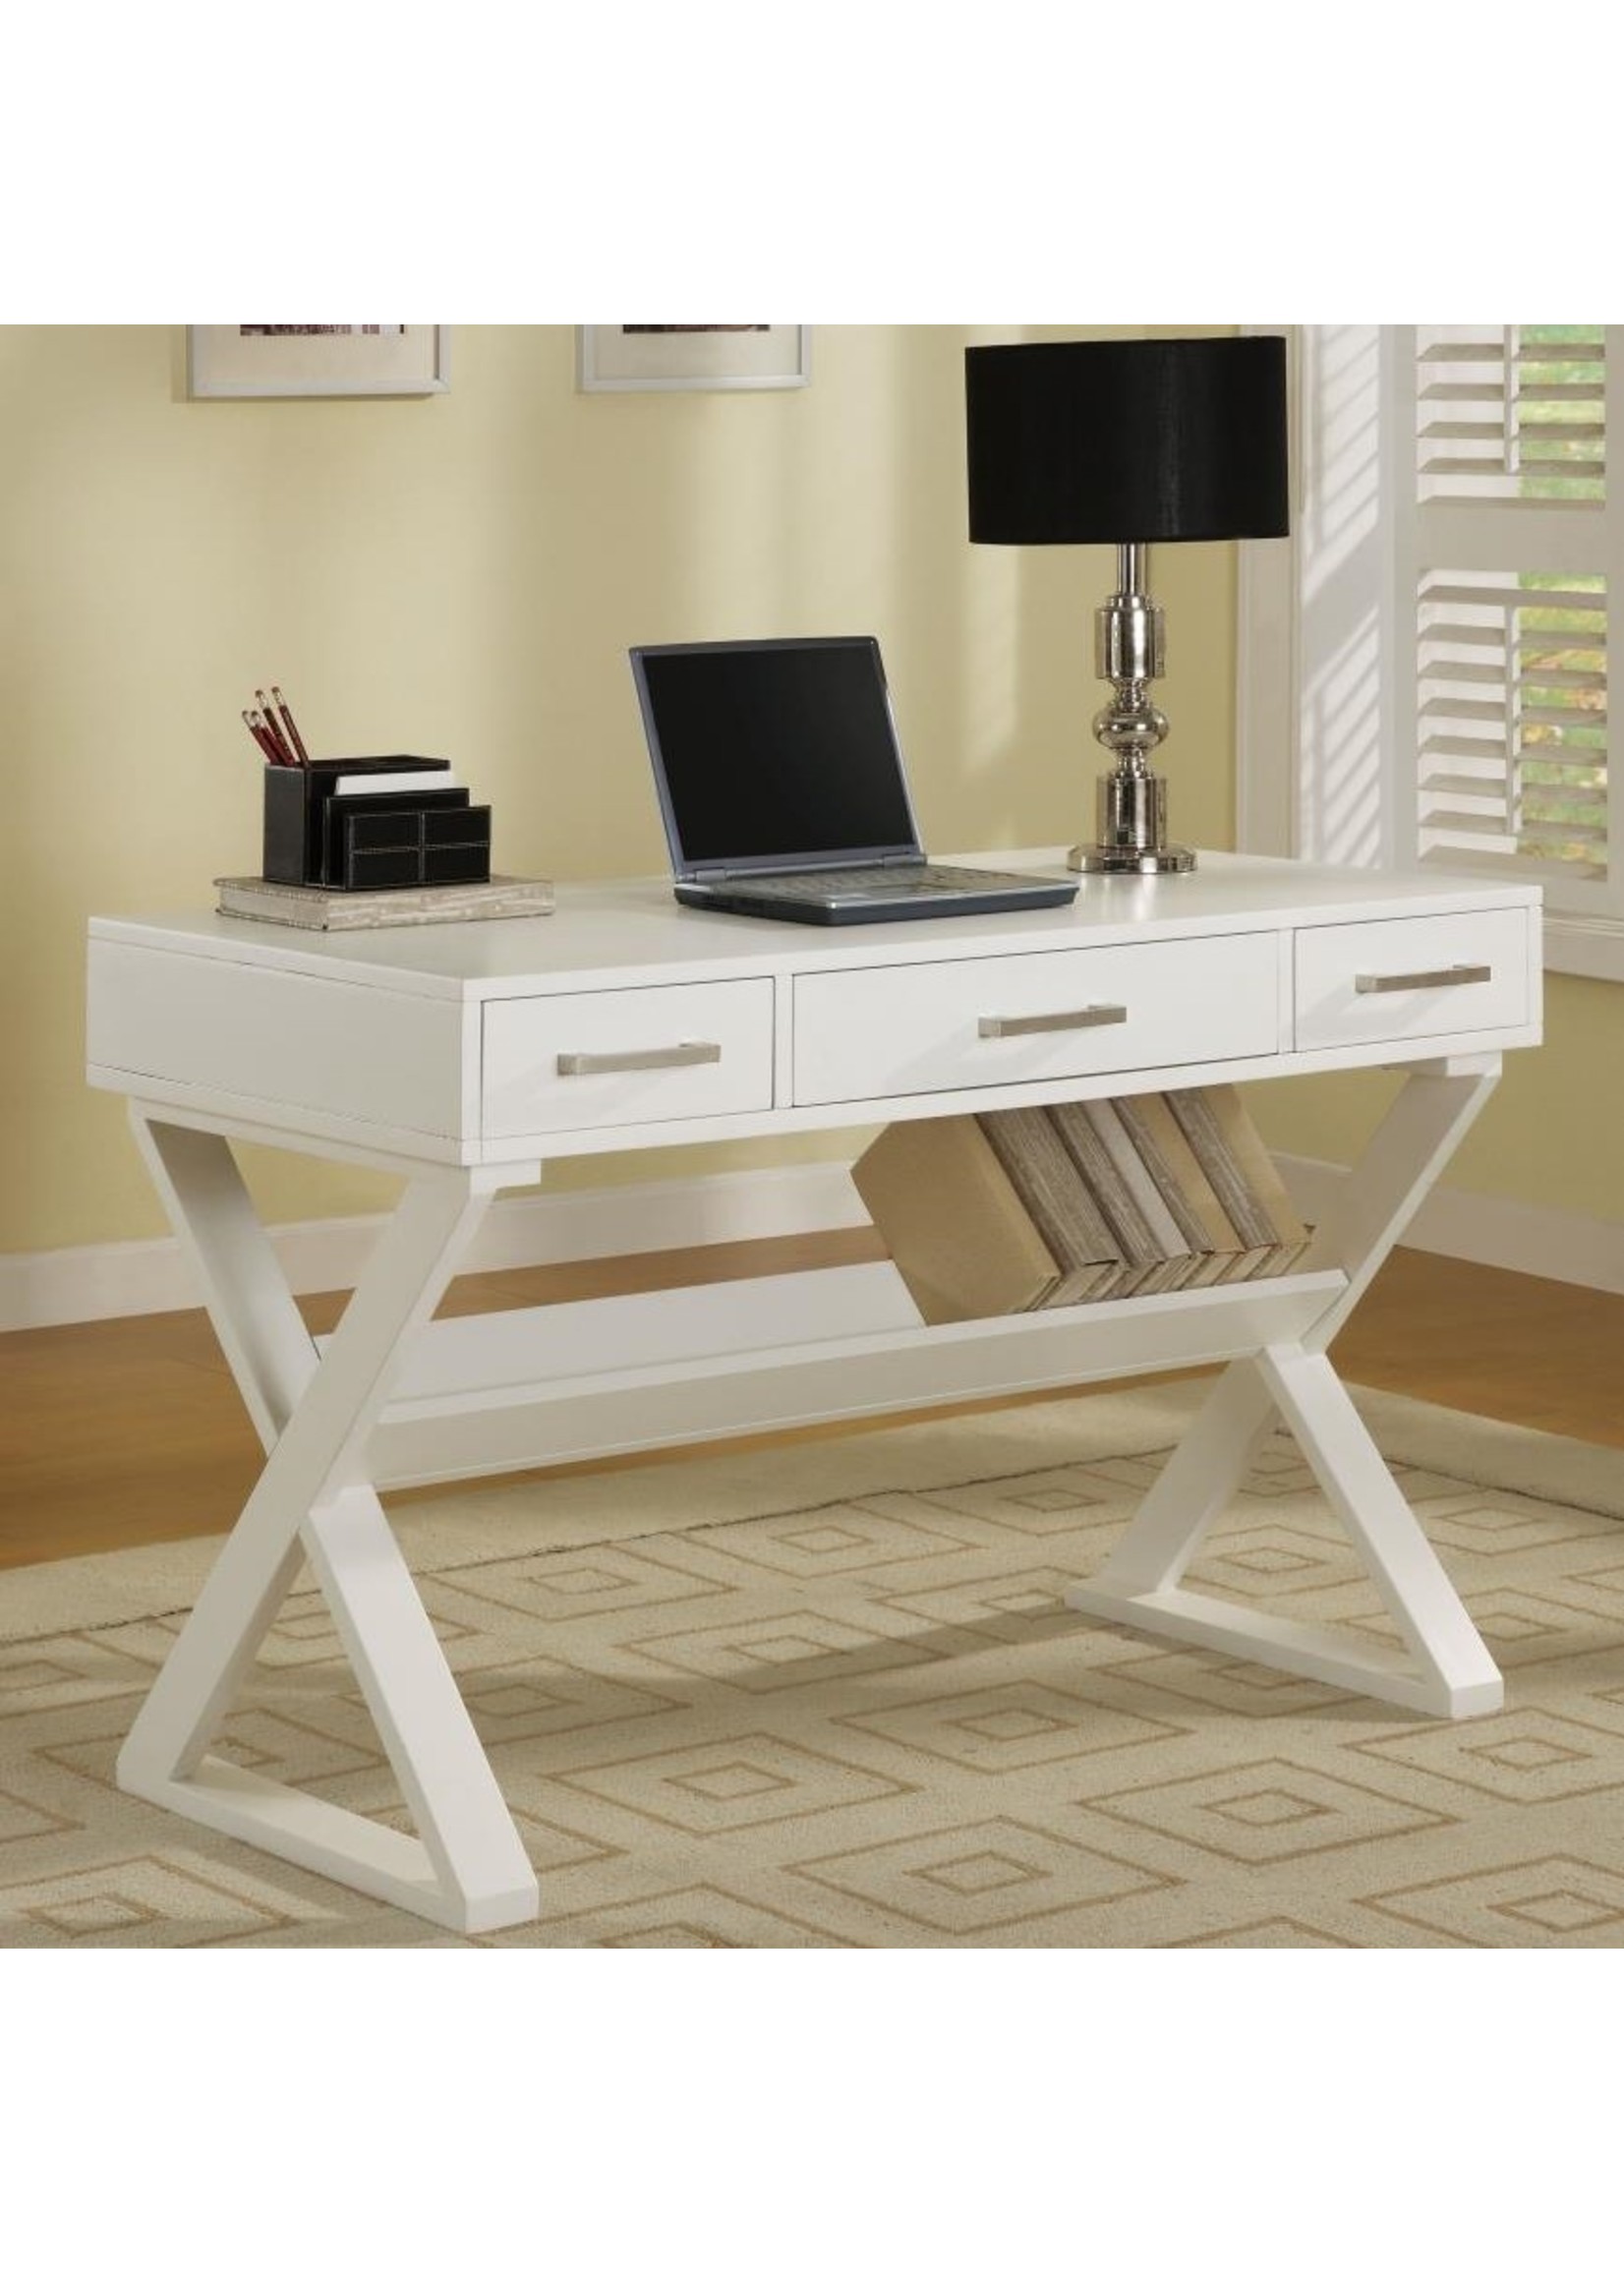 Coaster Furniture 800912 Krista 3 Drawer Writing Desk White